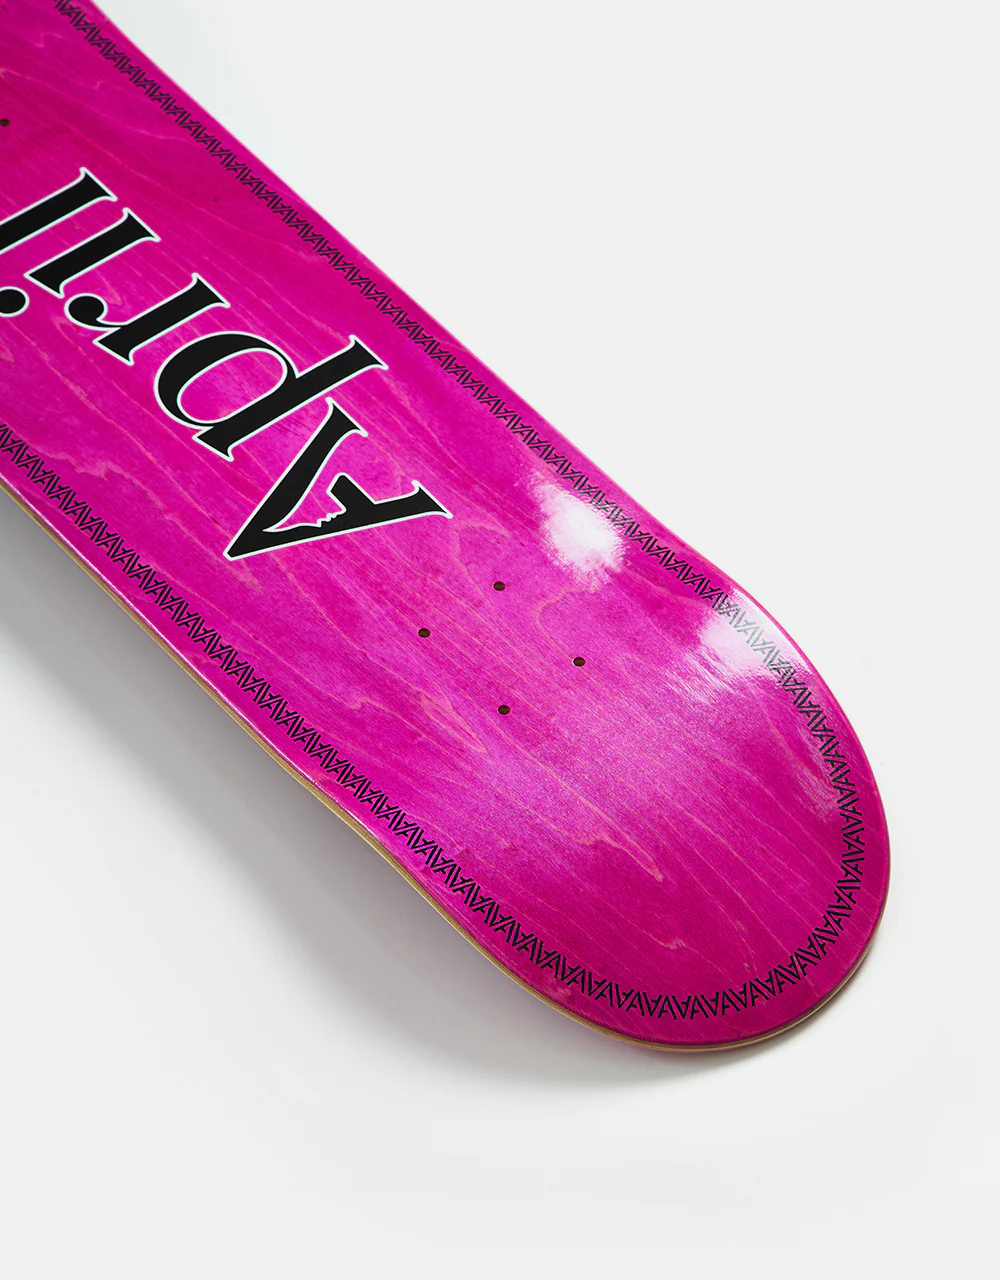 APRIL OG Logo Black Pink Helix Deck 8.25"